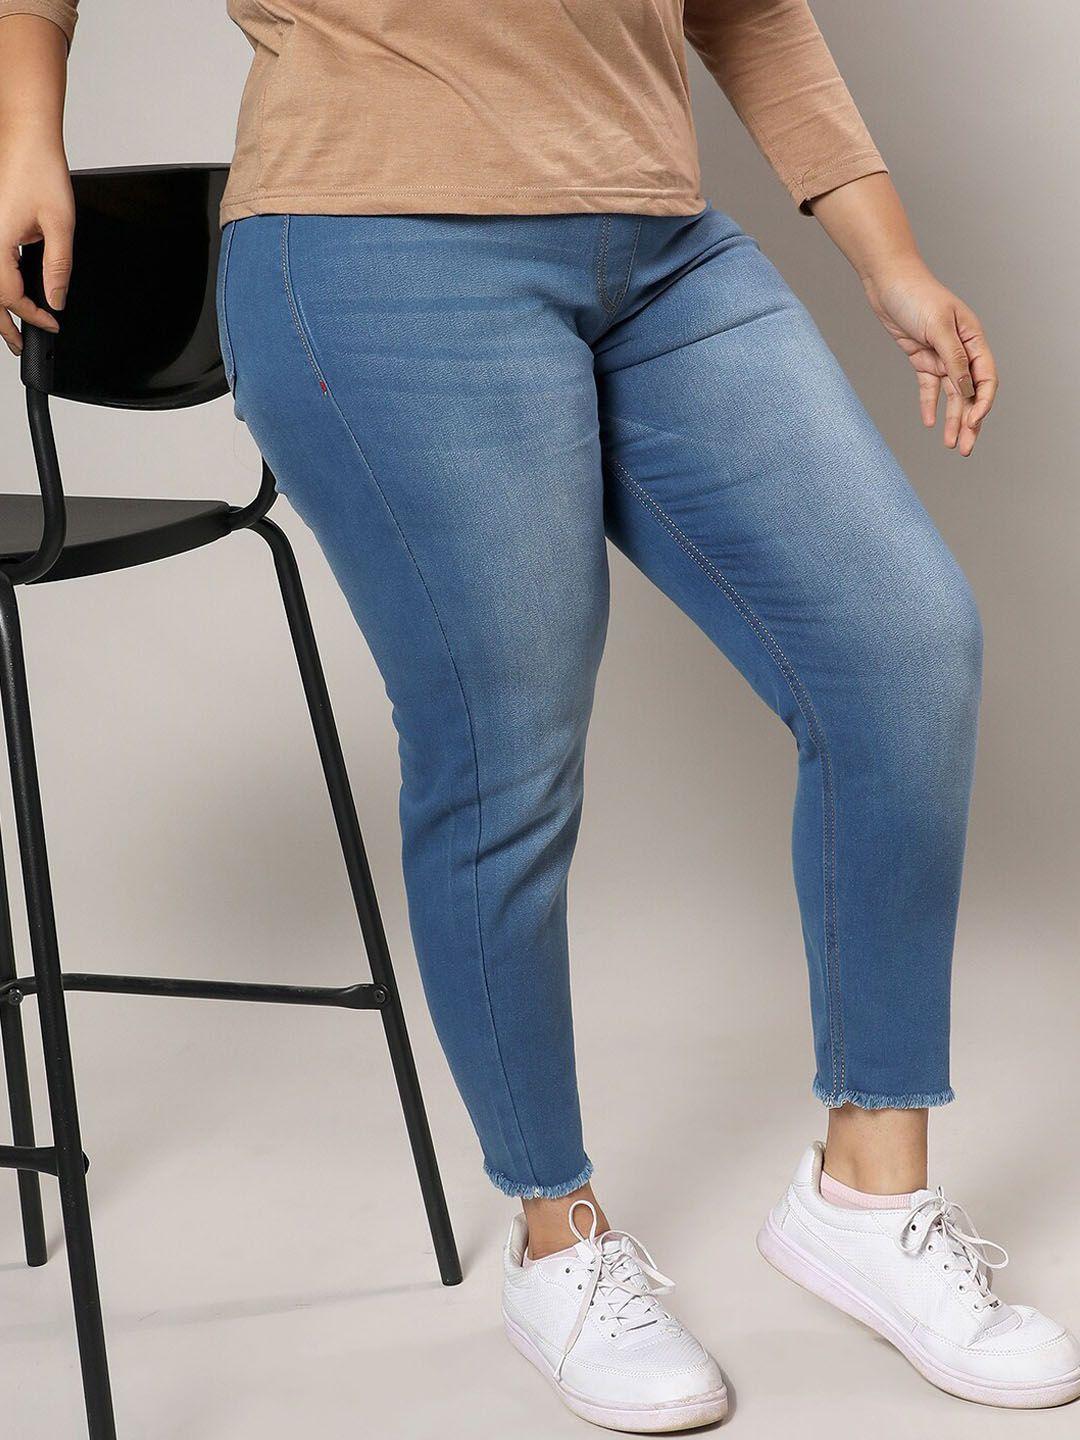 instafab plus women blue smart slim fit stretchable jeans